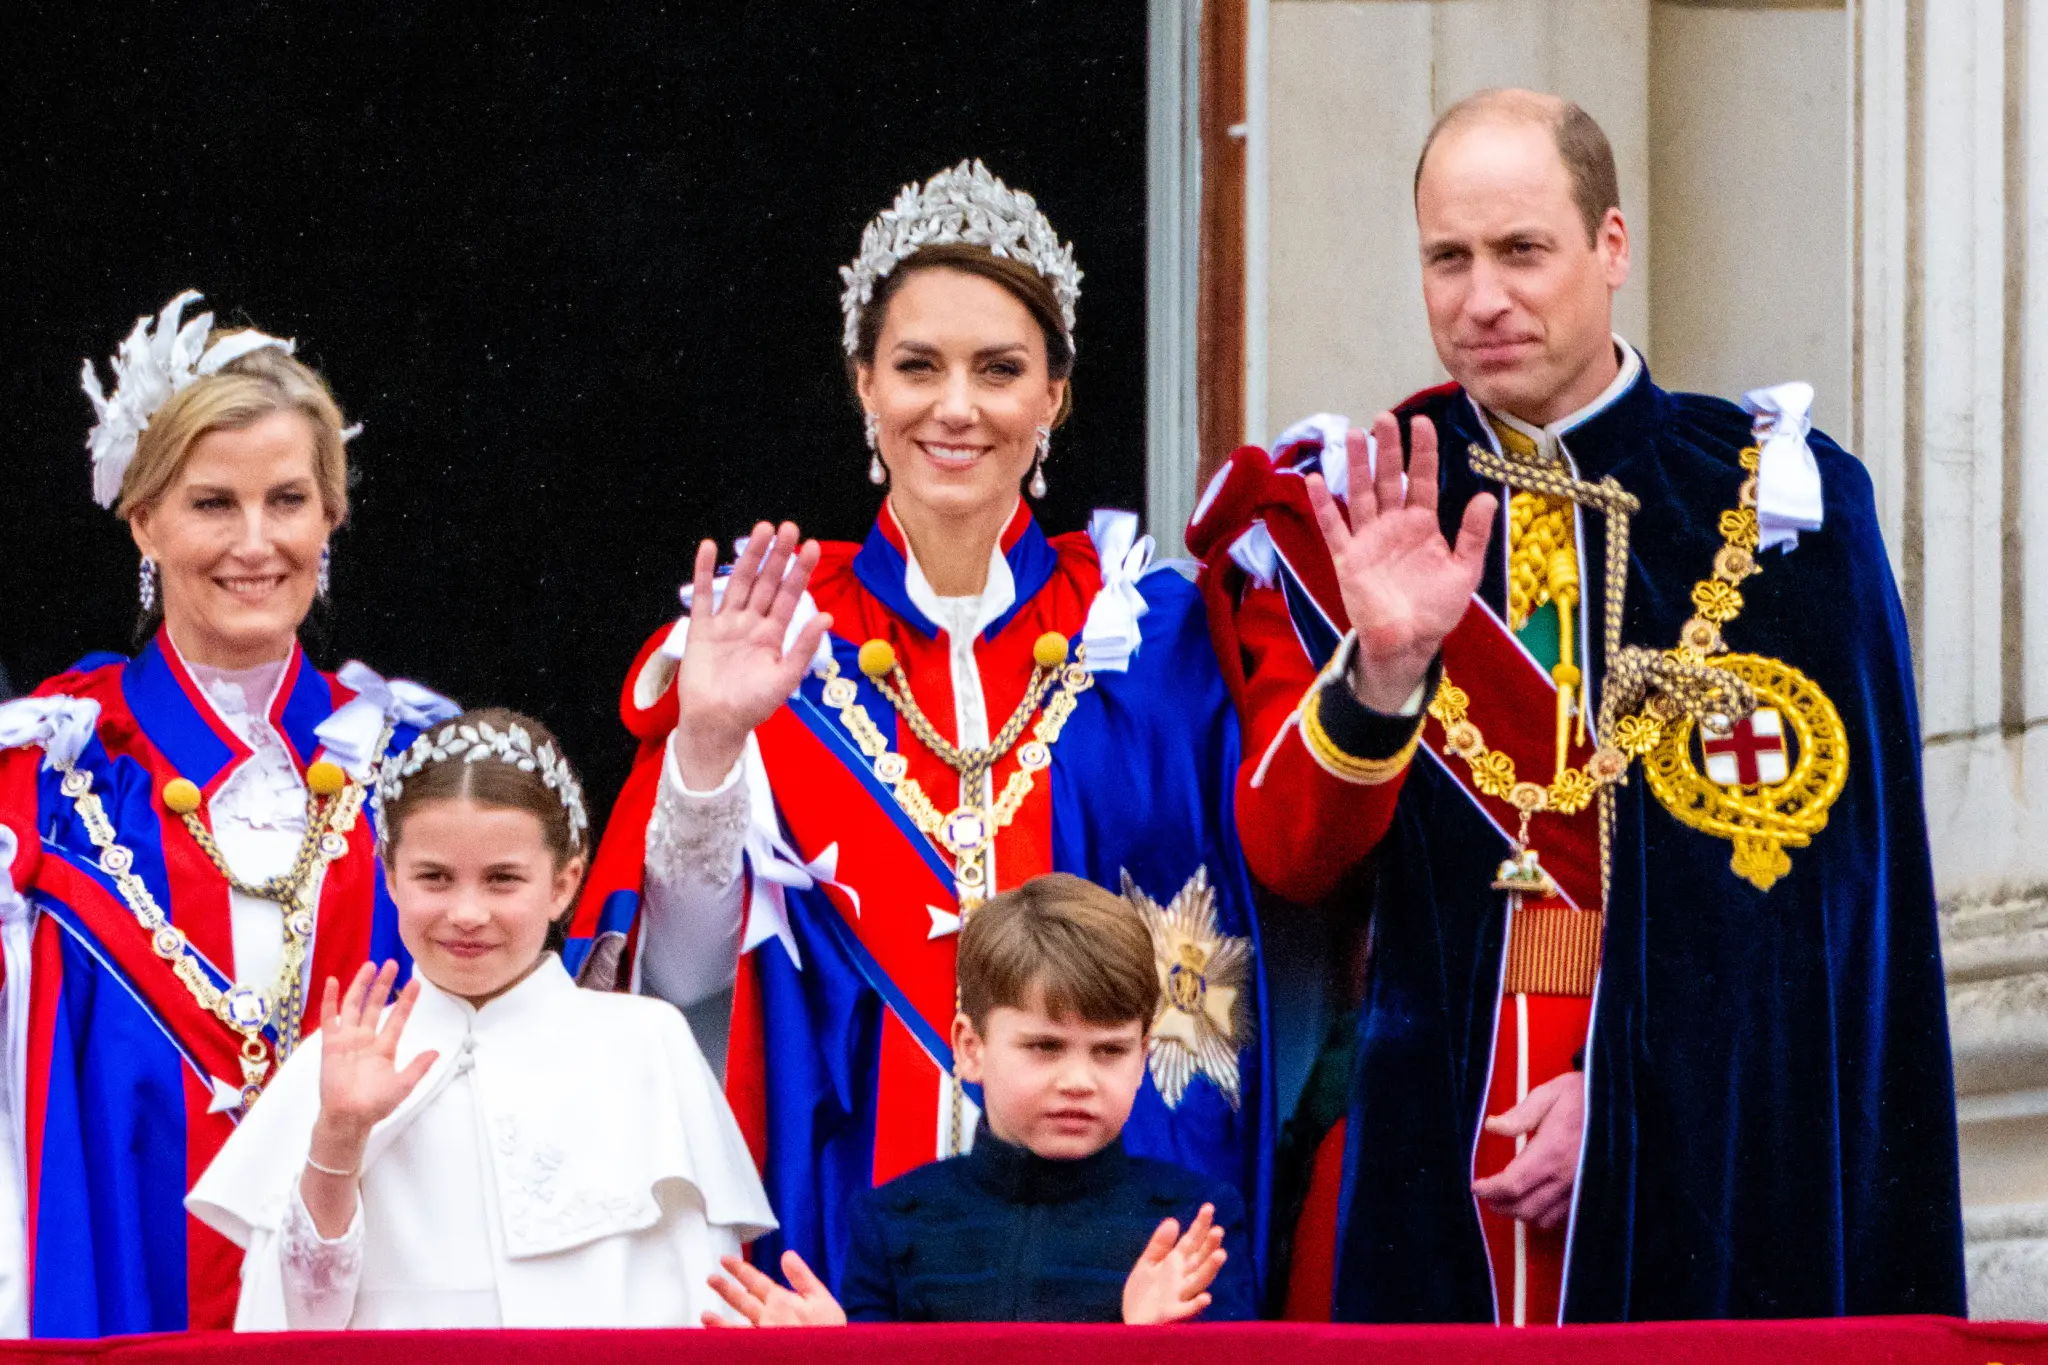 Revealed: The Struggle Behind Palace Doors – Prince William's Battle Against False Rumors